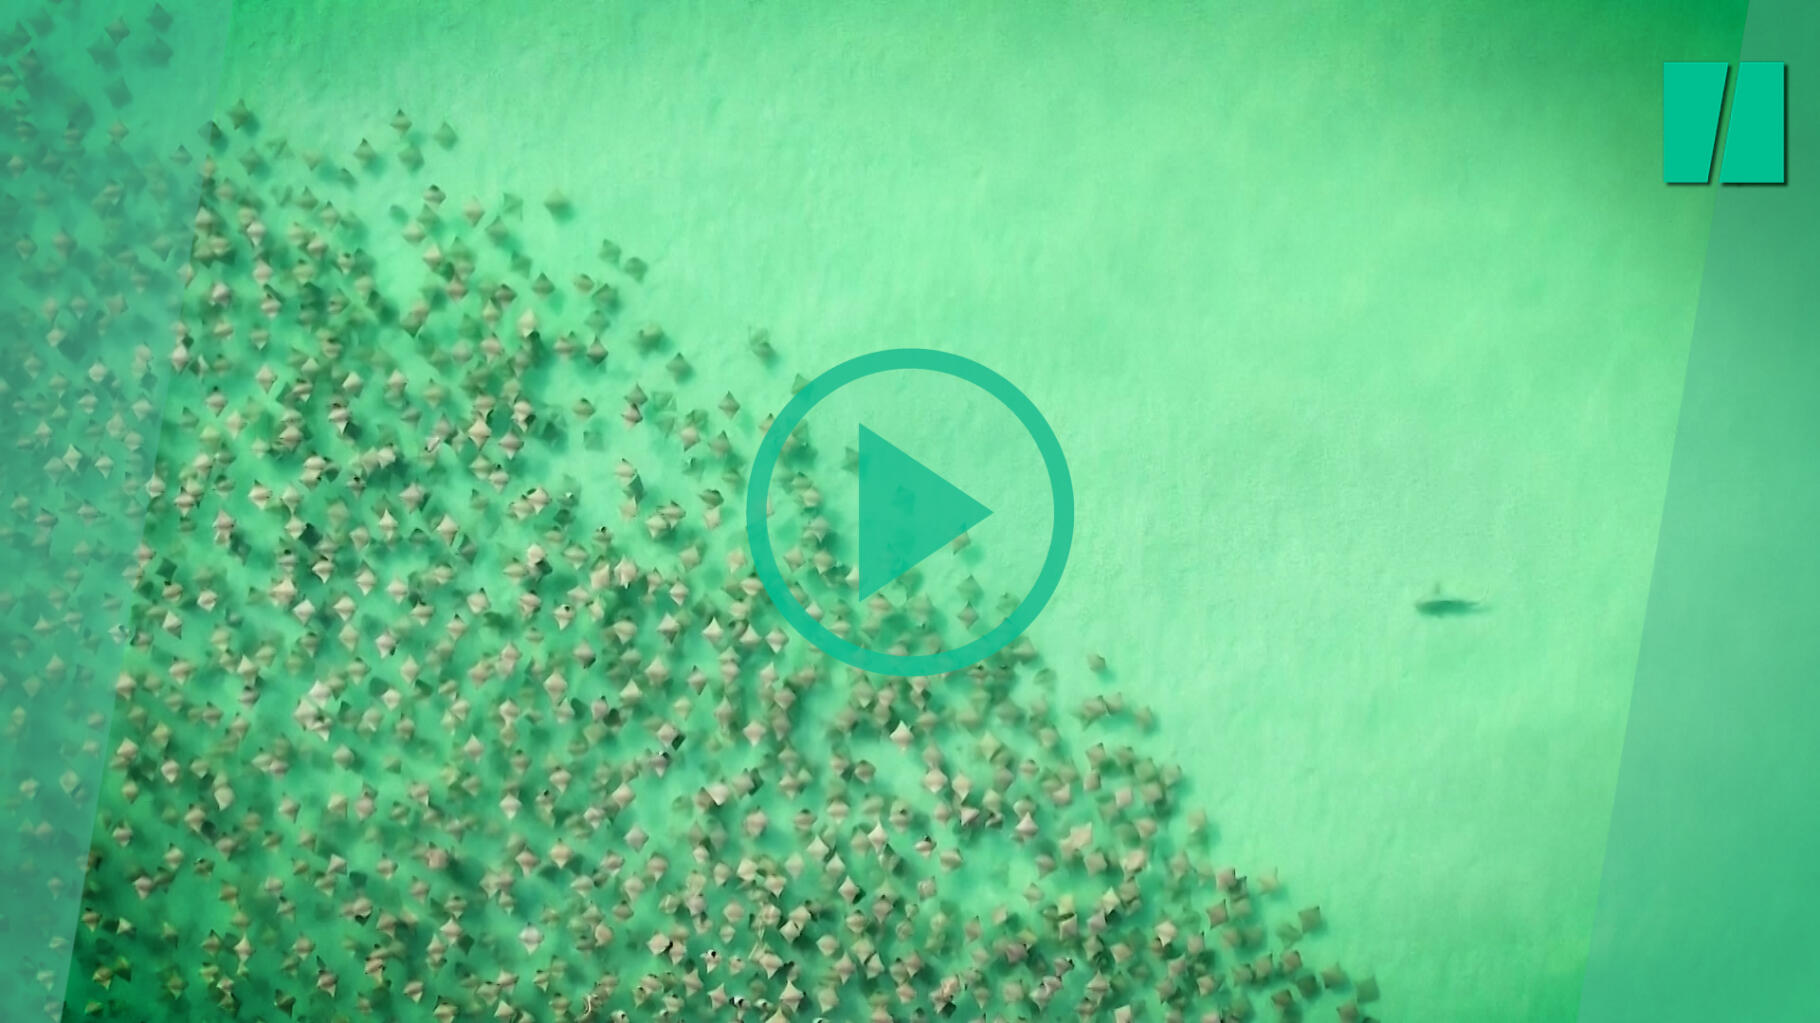 Ce drone a filmé une attaque de requin sur un banc de raies et c’est super impeessionnant